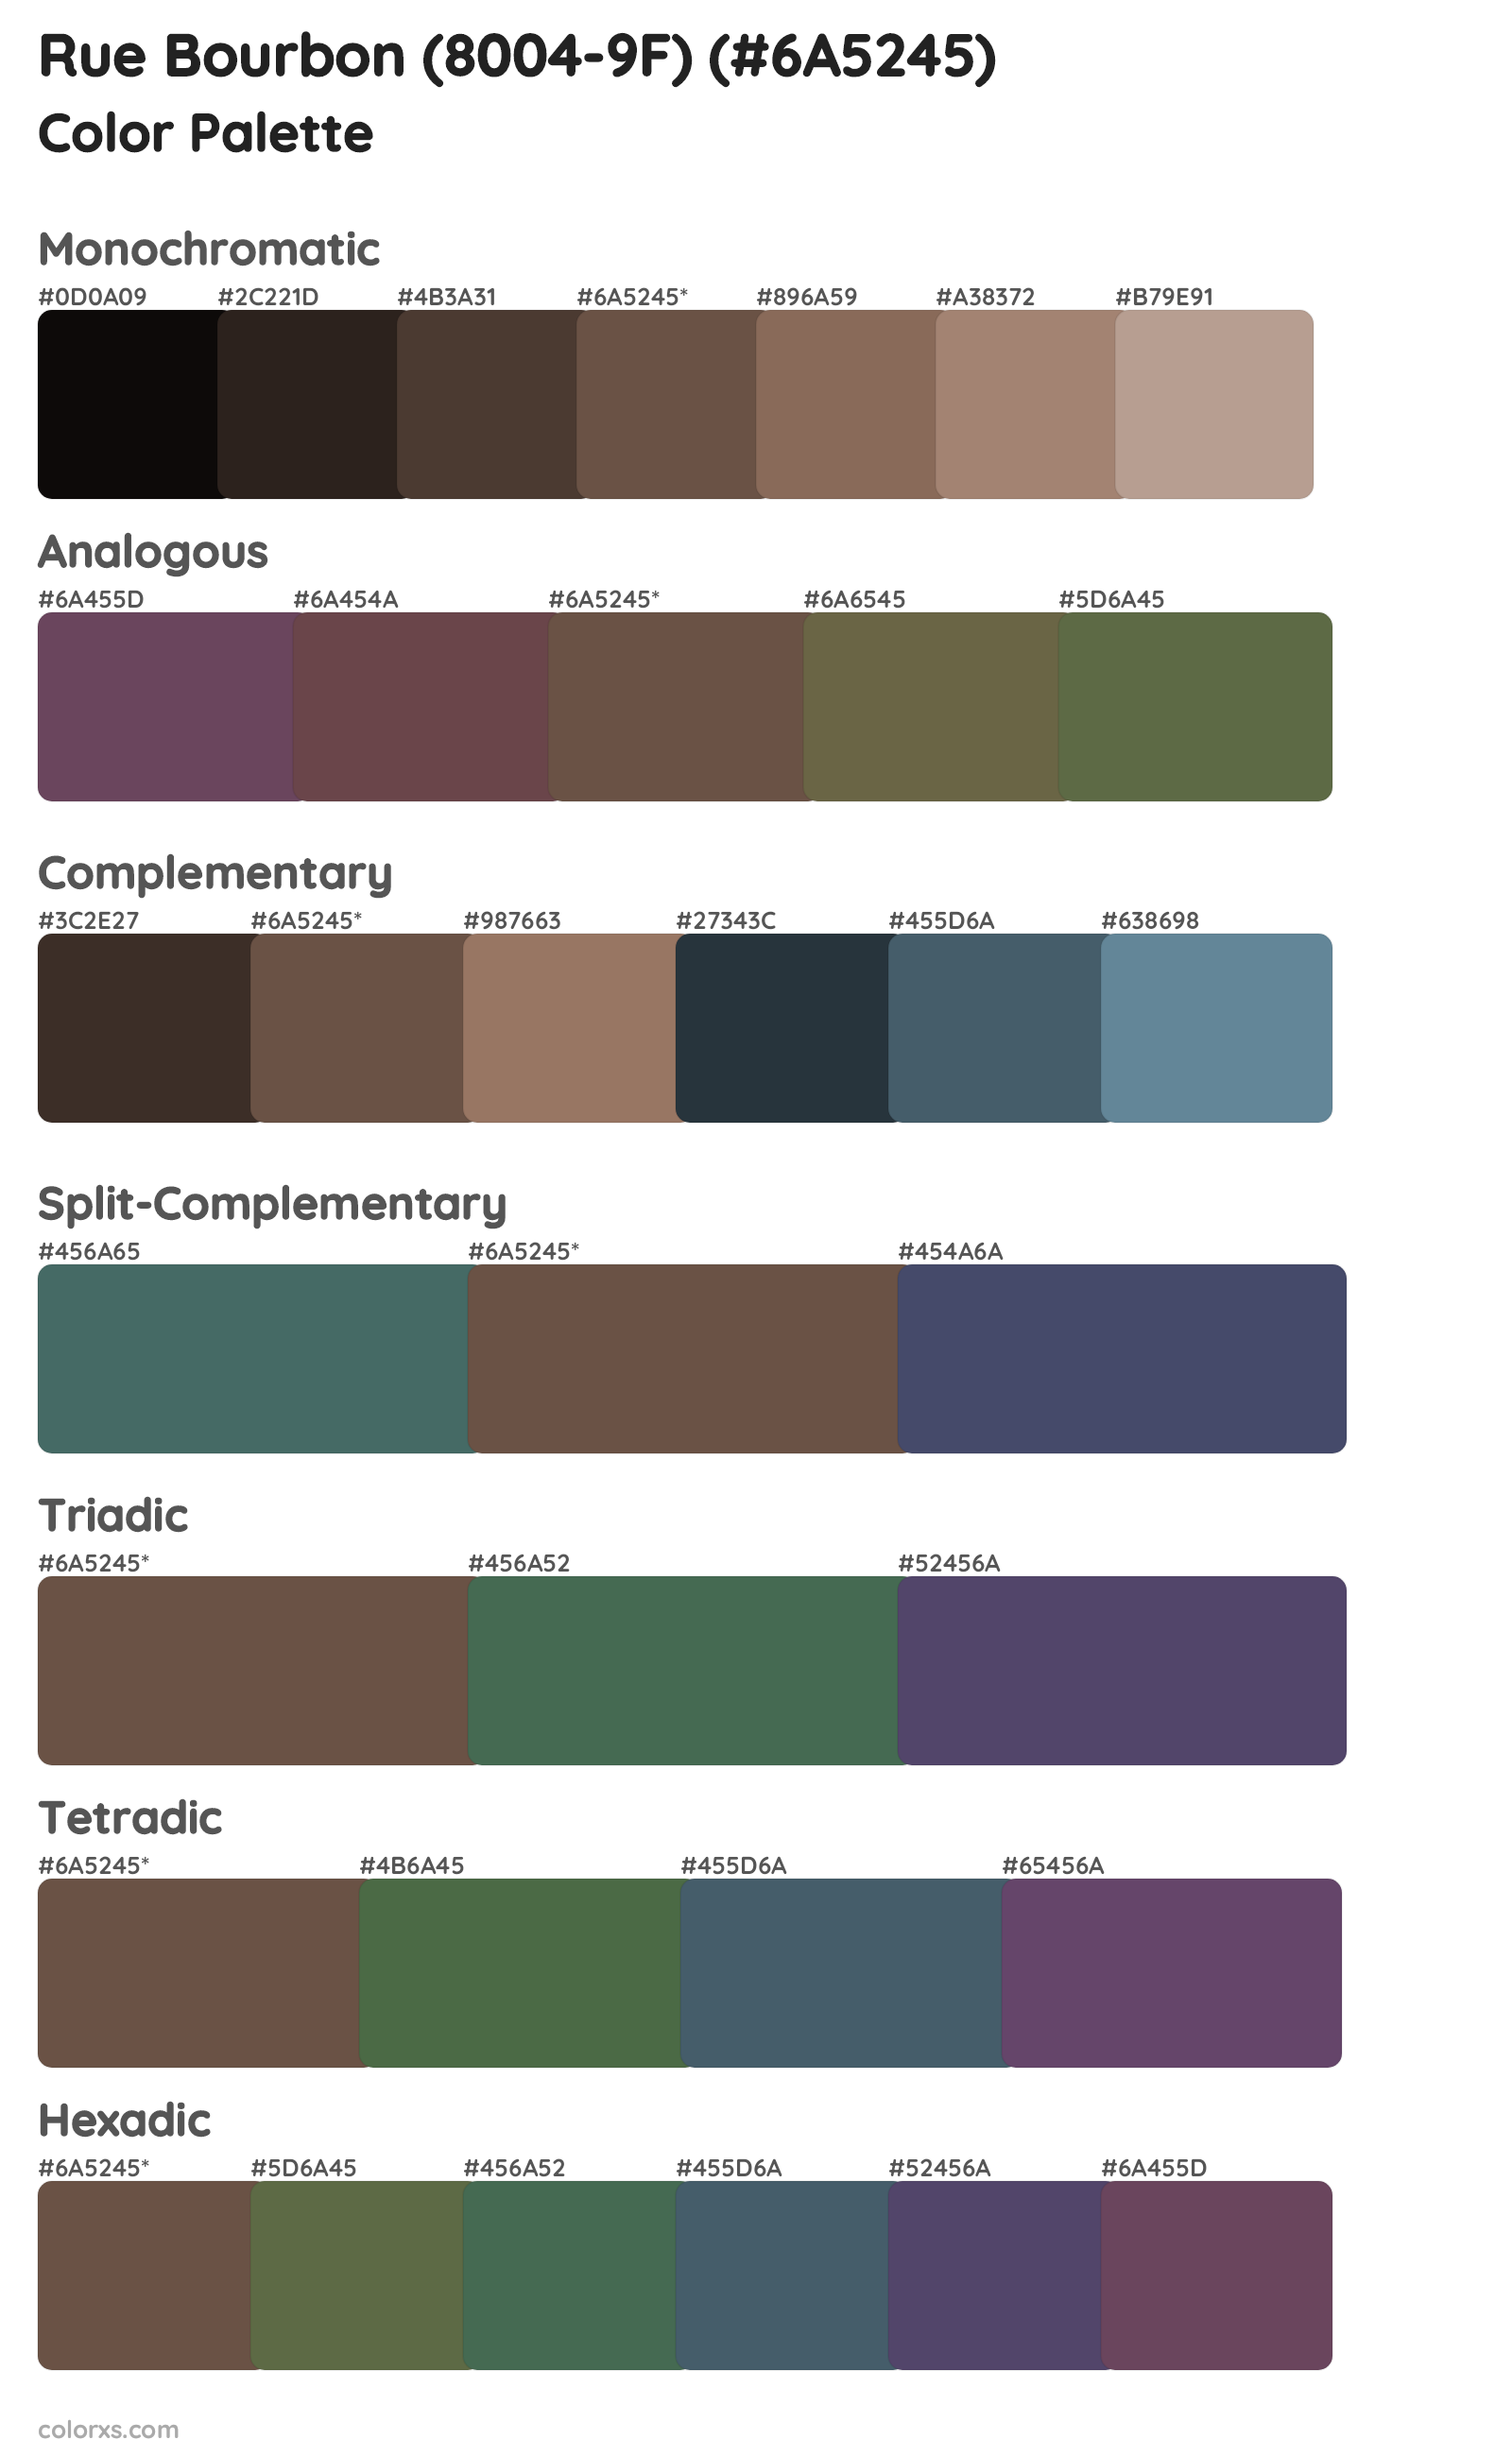 Rue Bourbon (8004-9F) Color Scheme Palettes